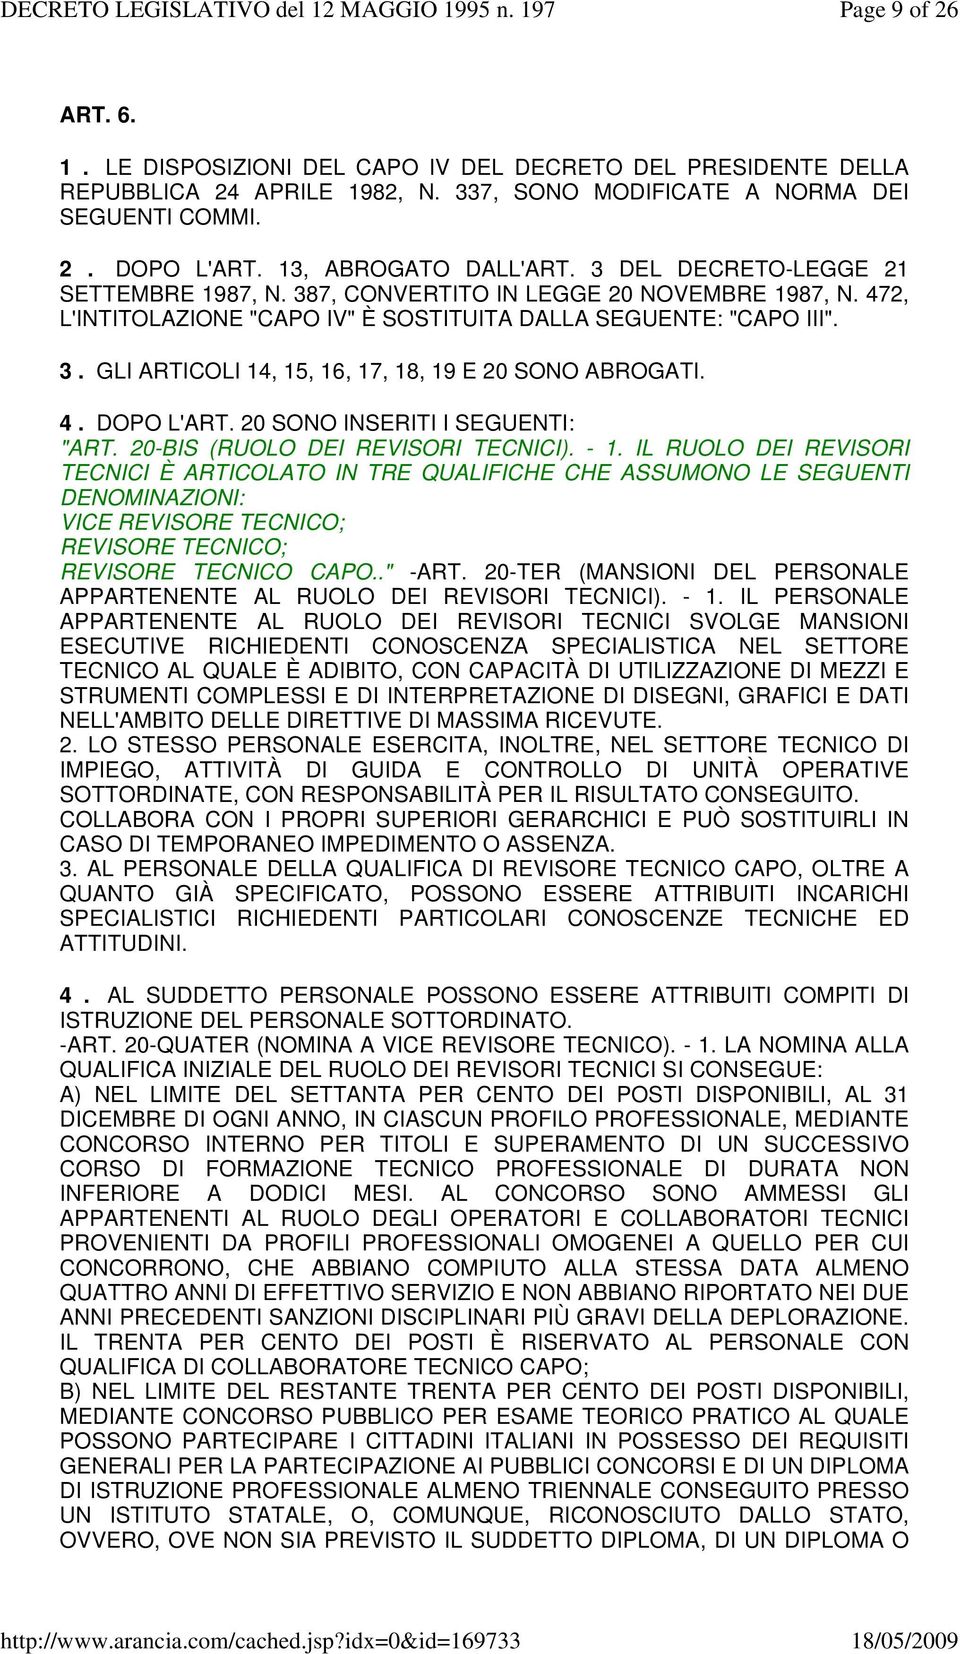 4. DOPO L'ART. 20 SONO INSERITI I SEGUENTI: "ART. 20-BIS (RUOLO DEI REVISORI TECNICI). - 1.